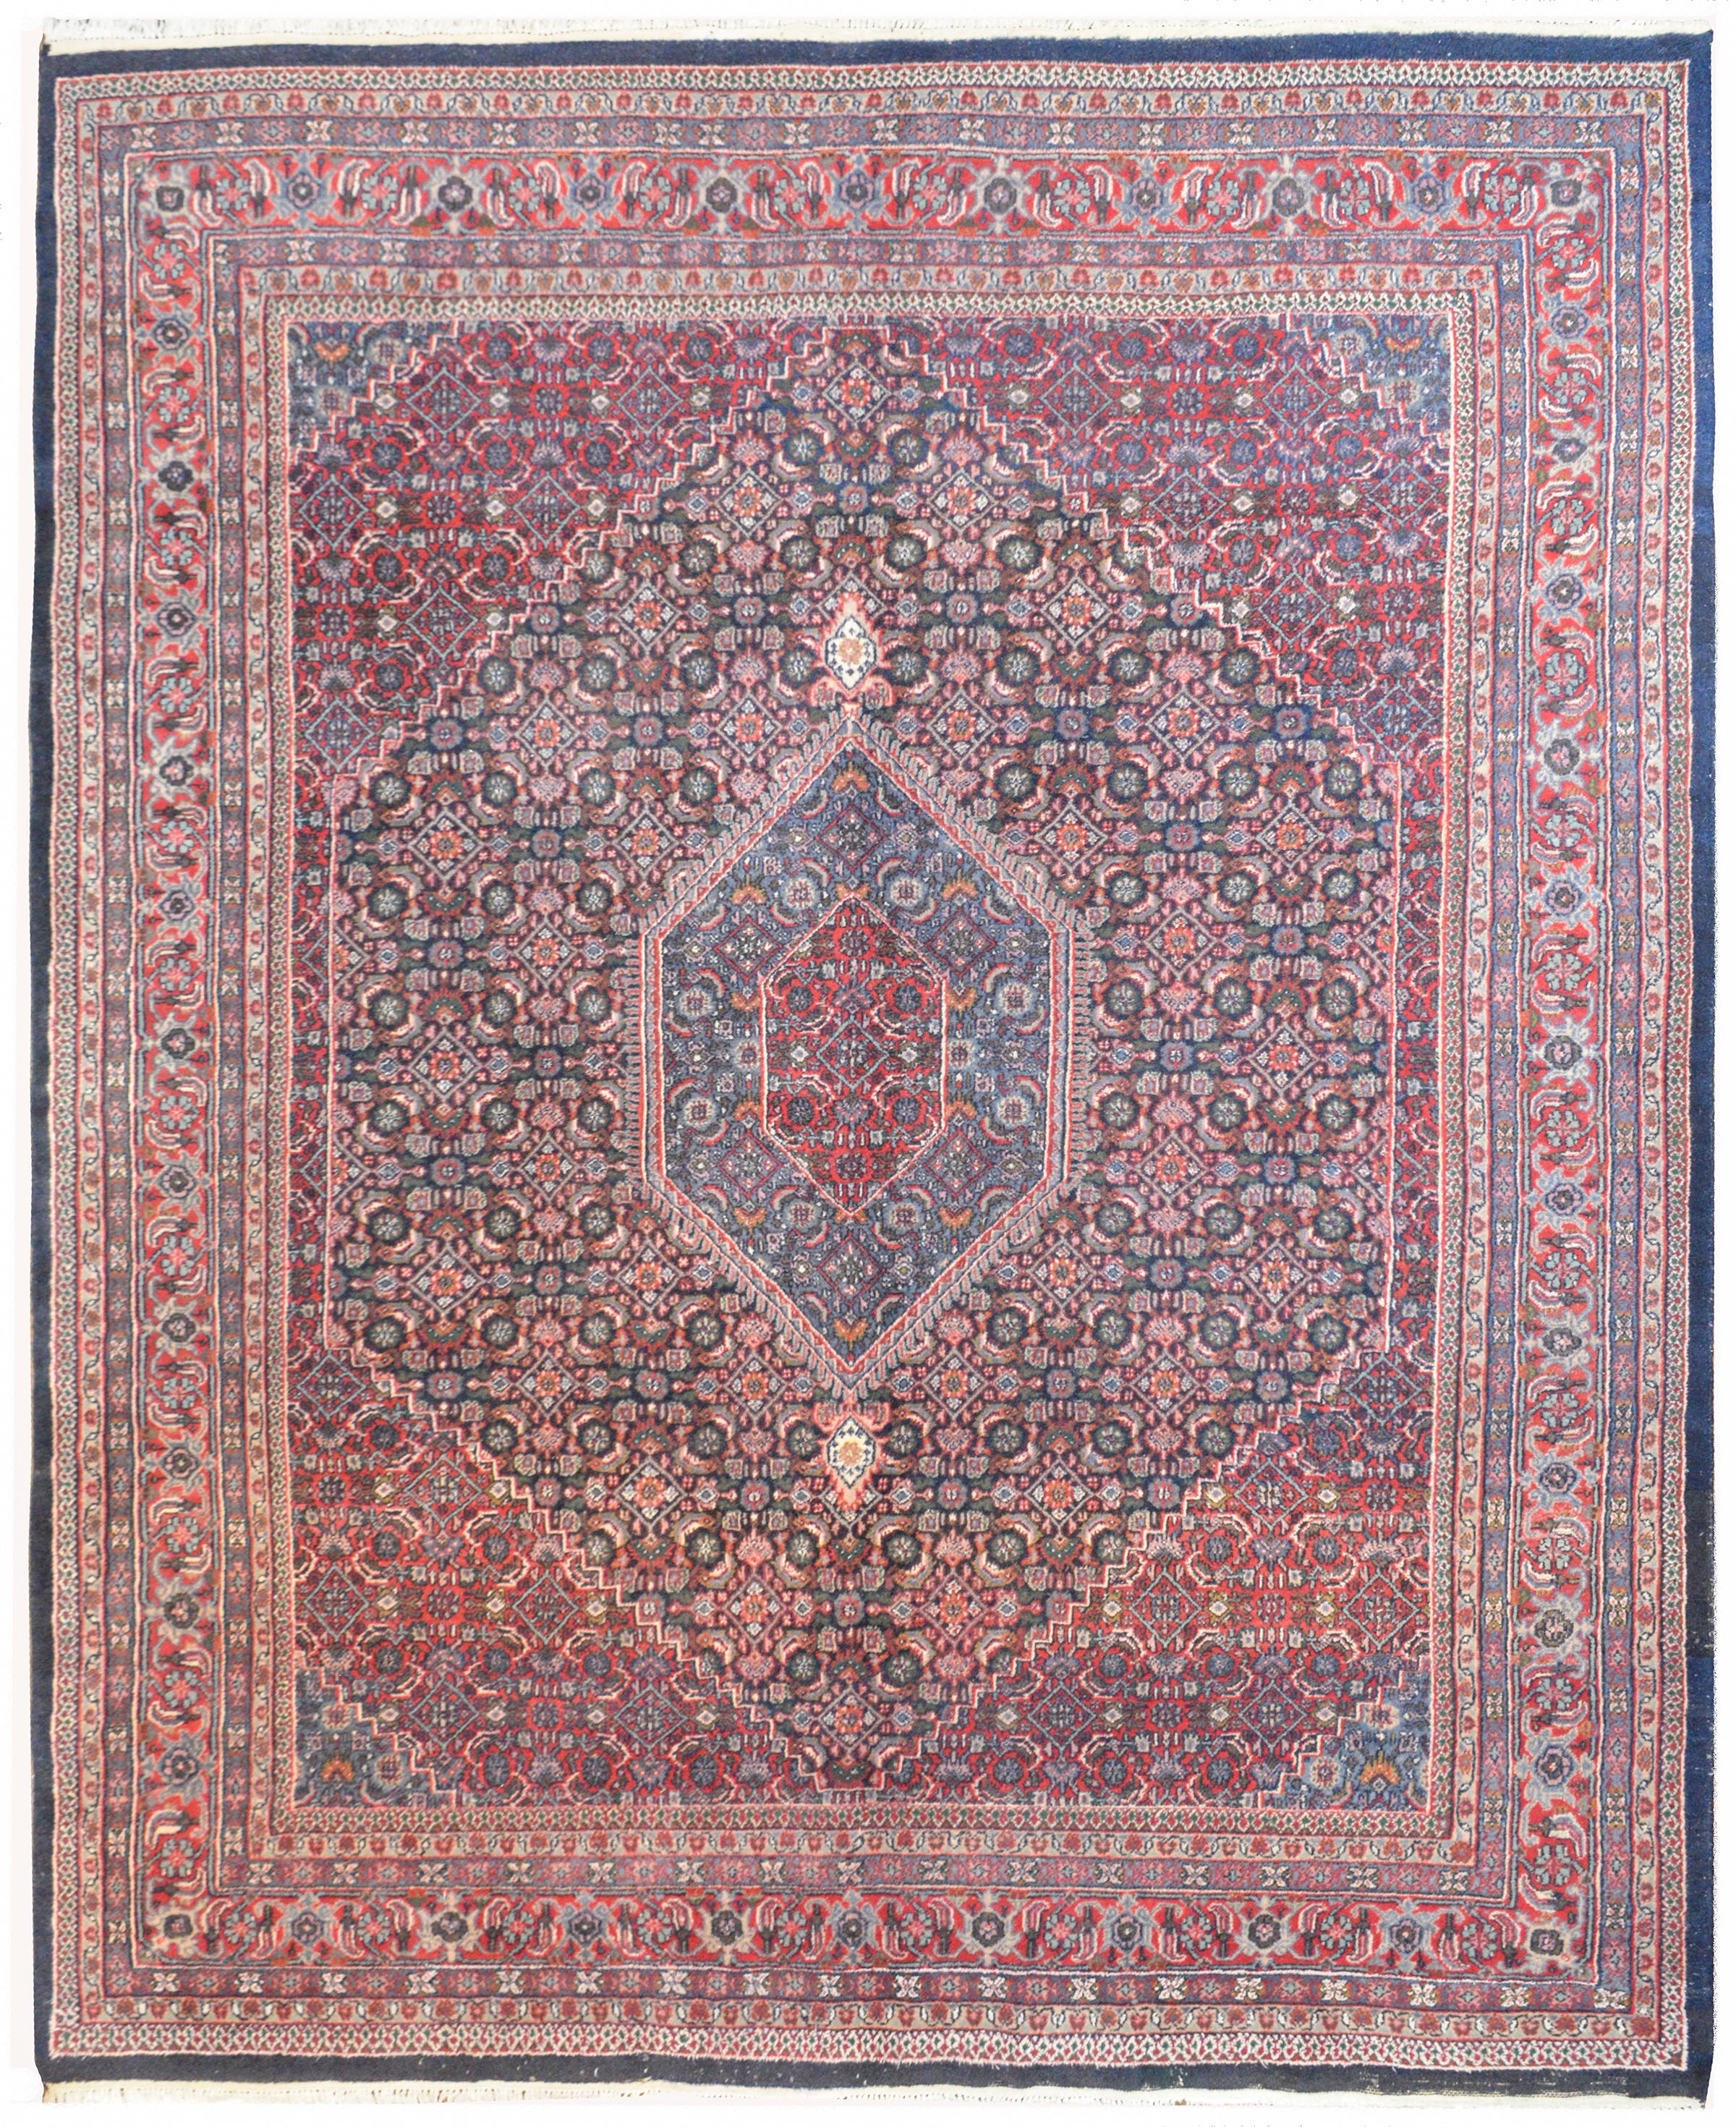 Ein alter indischer handgeknüpfter Bidjar-Teppich mit mehreren floralen Spaliermustern aus karminroter, rosa, weißer, indigoblauer, grüner und goldener pflanzengefärbter Wolle. Die Bordüre besteht aus mehreren dünnen, floral gemusterten Streifen.